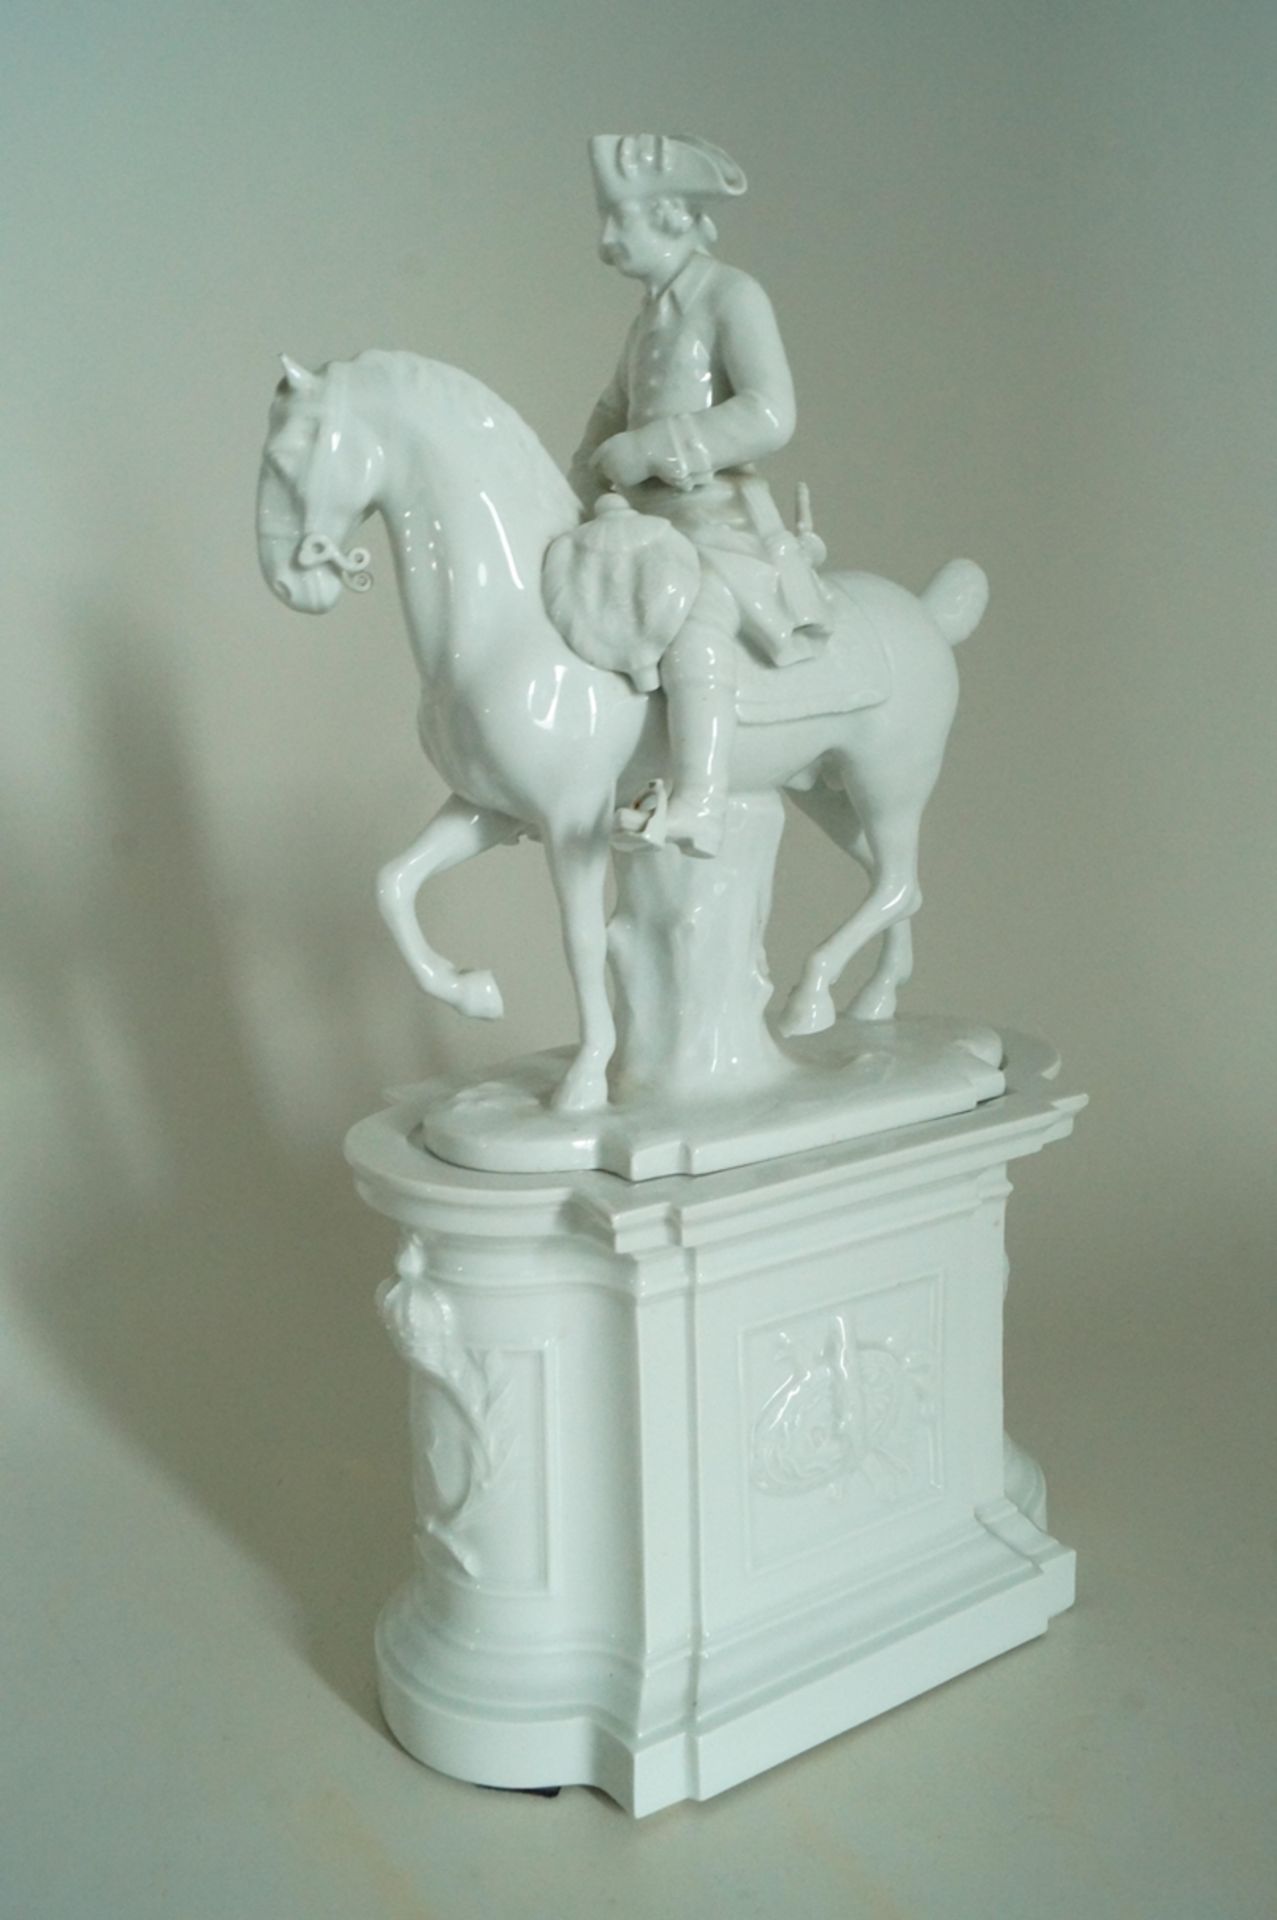 Friedrich II. zu Pferd auf Sockel; Große Porzellanfigur vom "Alten Fritz" zu Pferd auf Denkmalsocke - Bild 2 aus 4